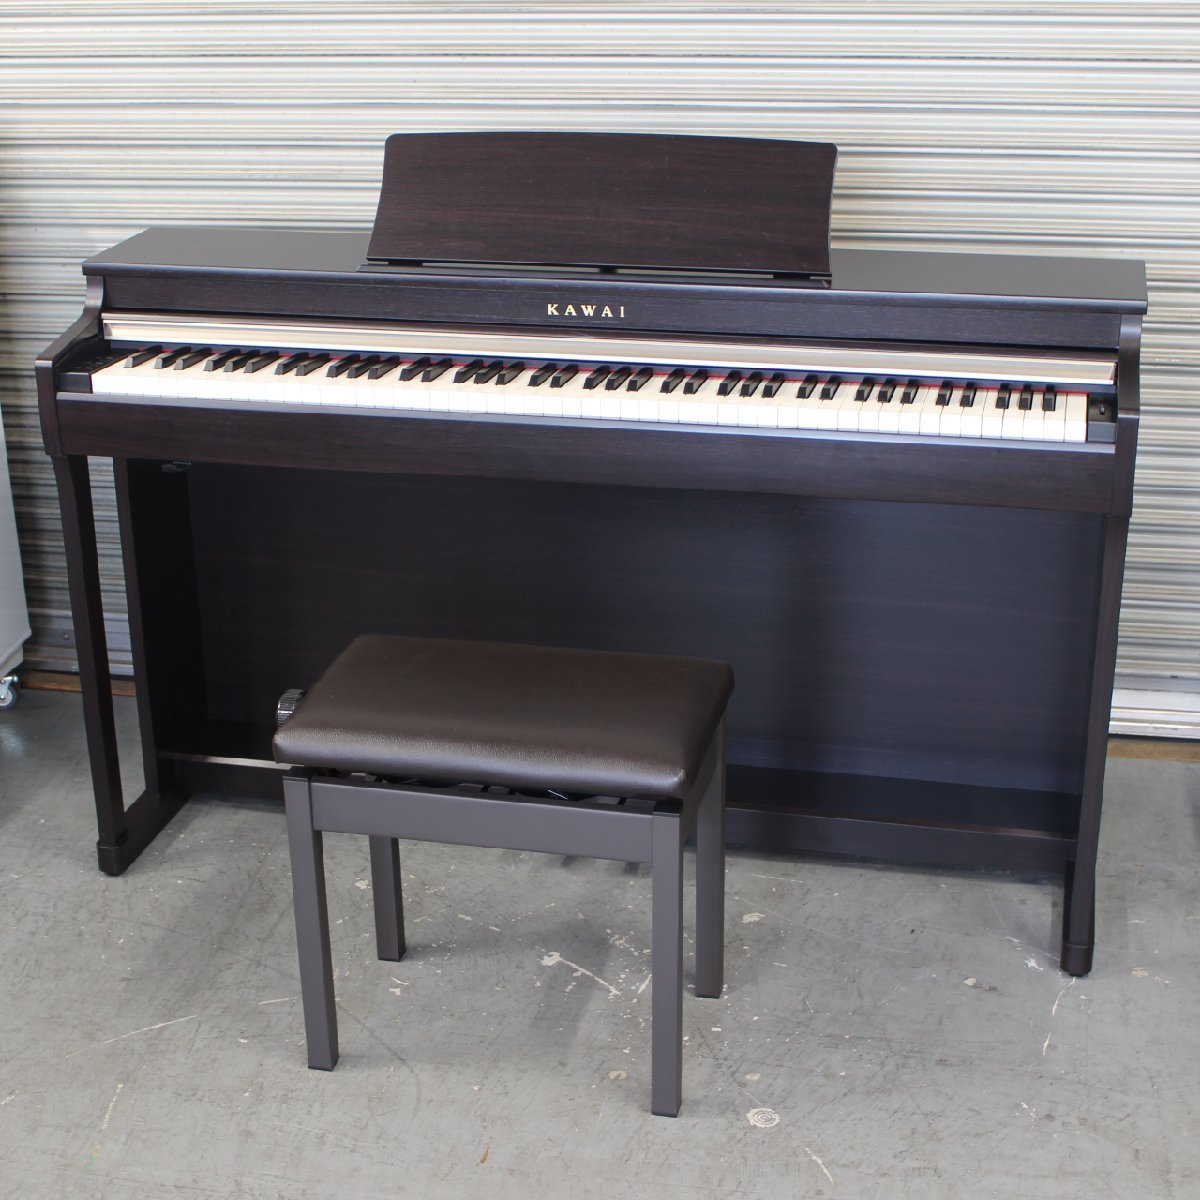 東京都世田谷区にて KAWAI 電子ピアノ CN25R 2015年製 を出張買取させて頂きました。